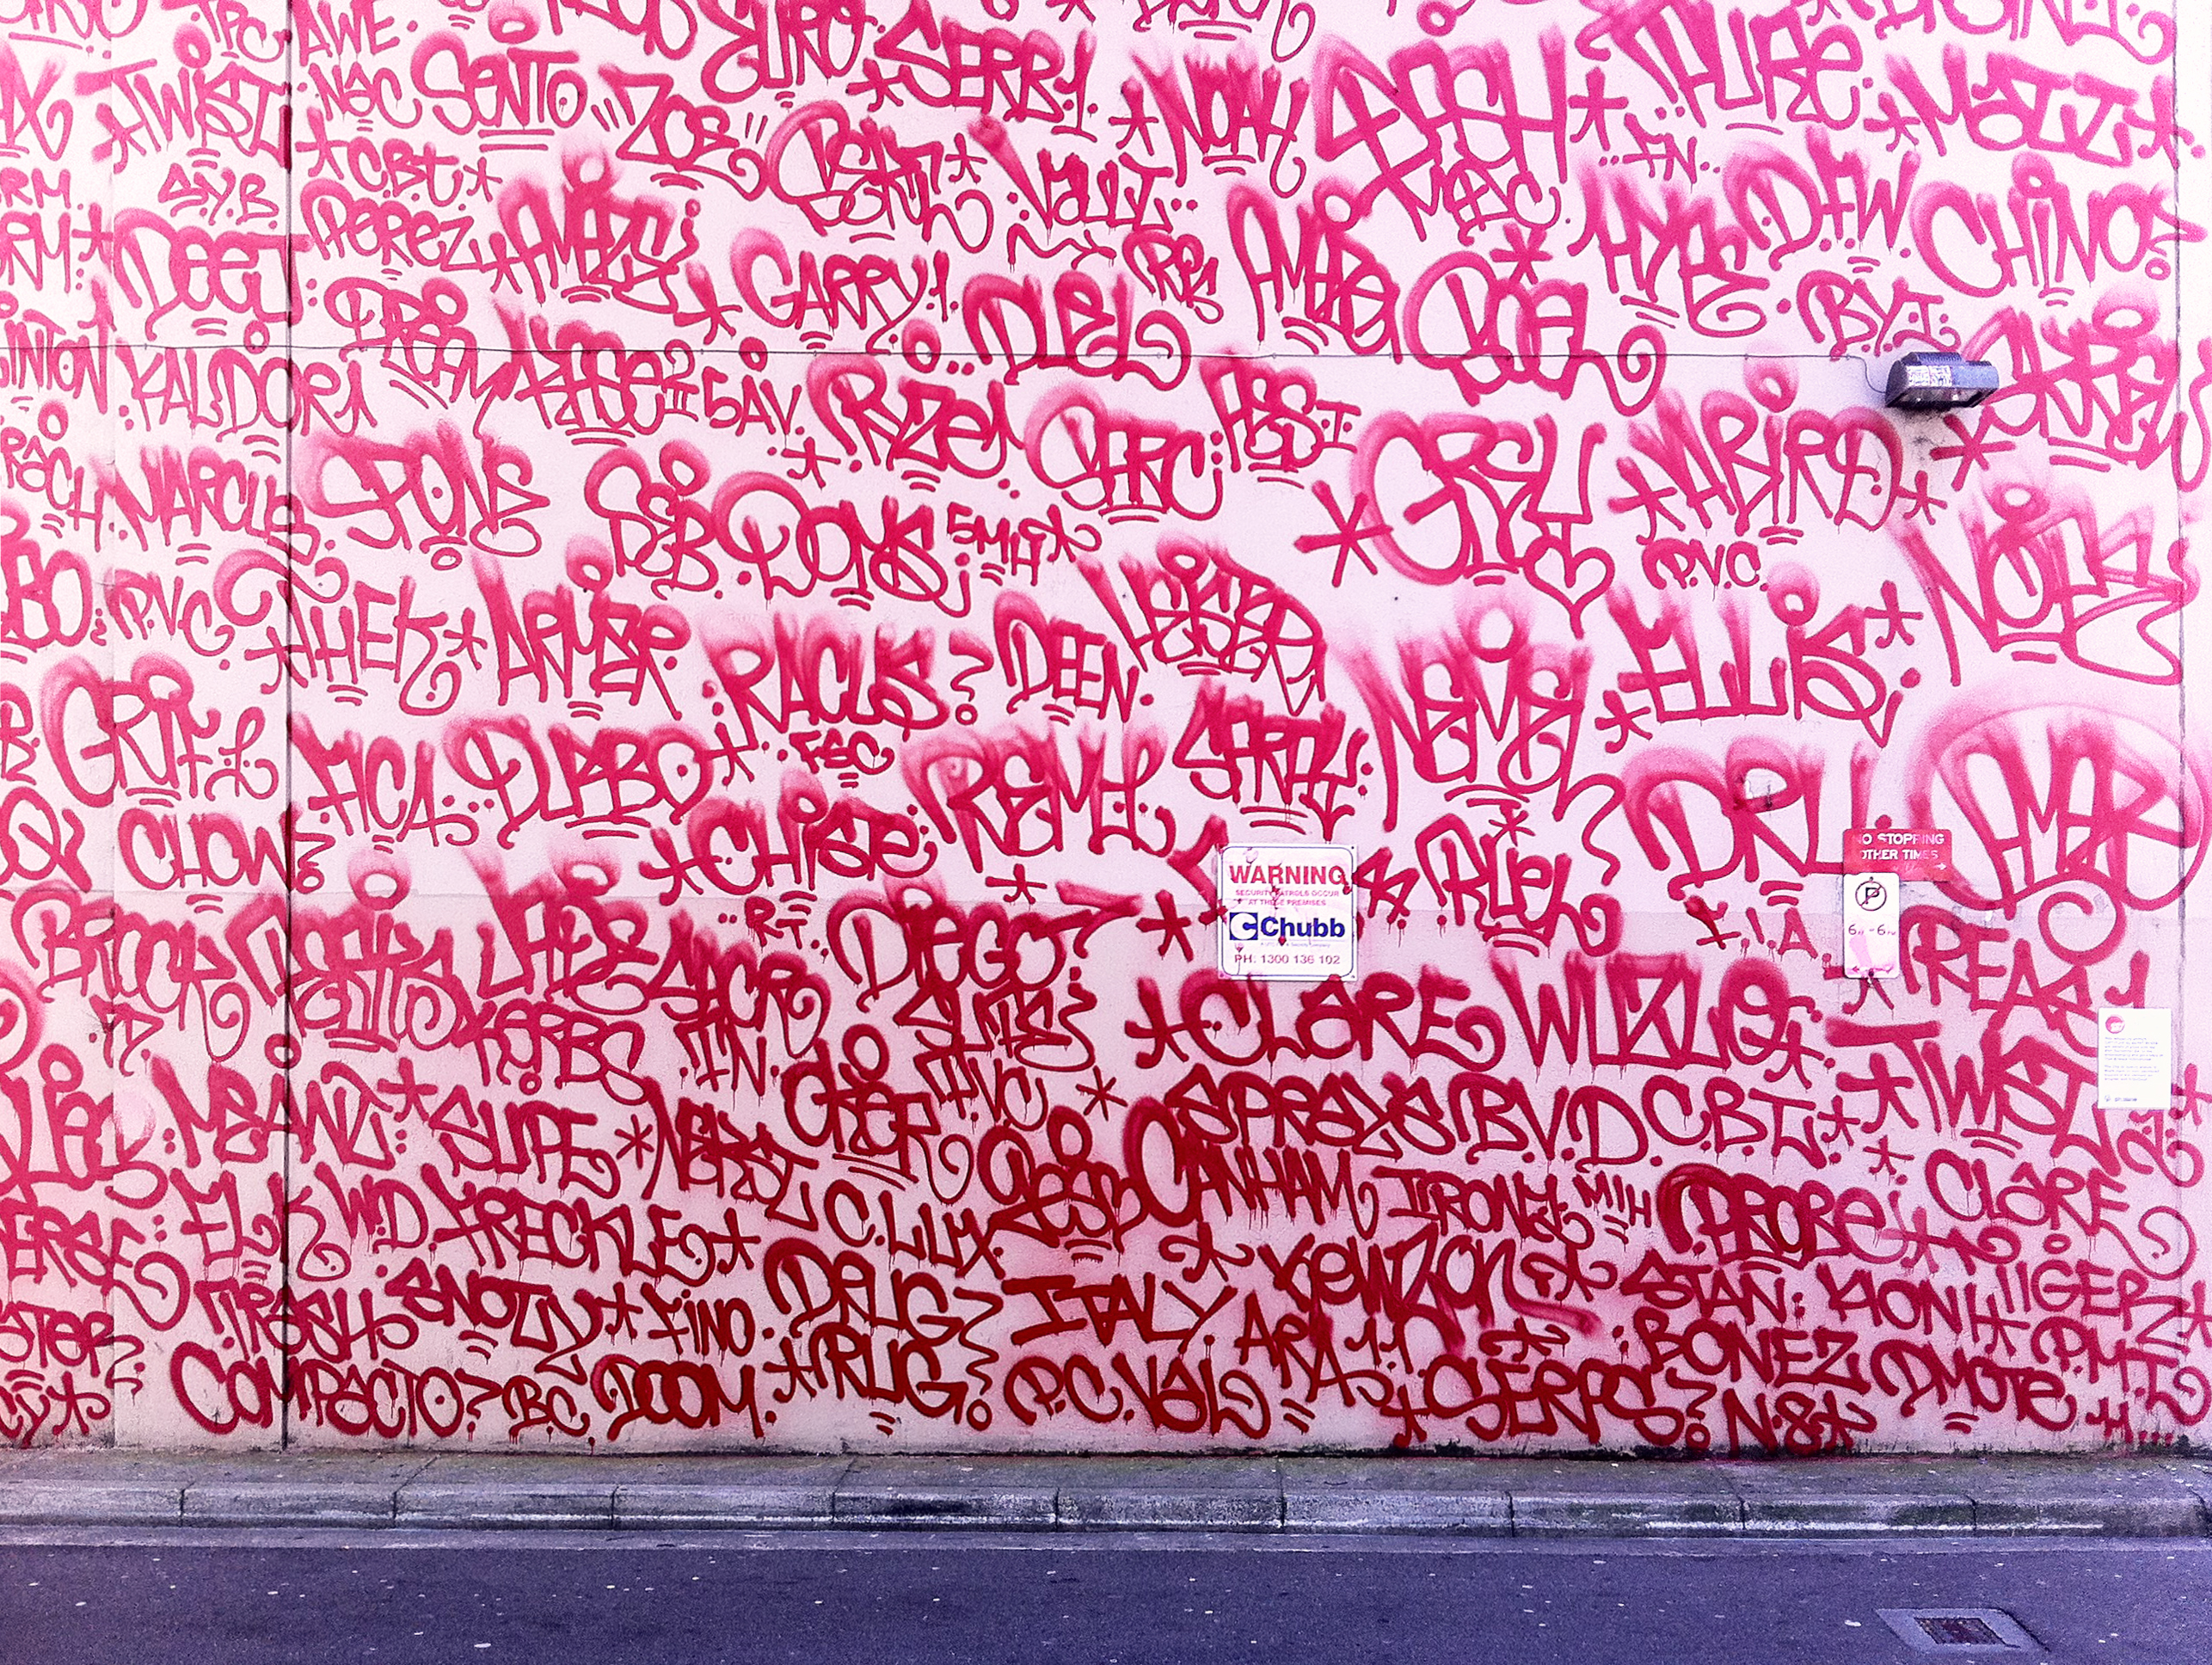 Программа на обои на стене. Граффити на стене. Фон стена с надписями. Надписи на стенах граффити. Тэги на стенах.